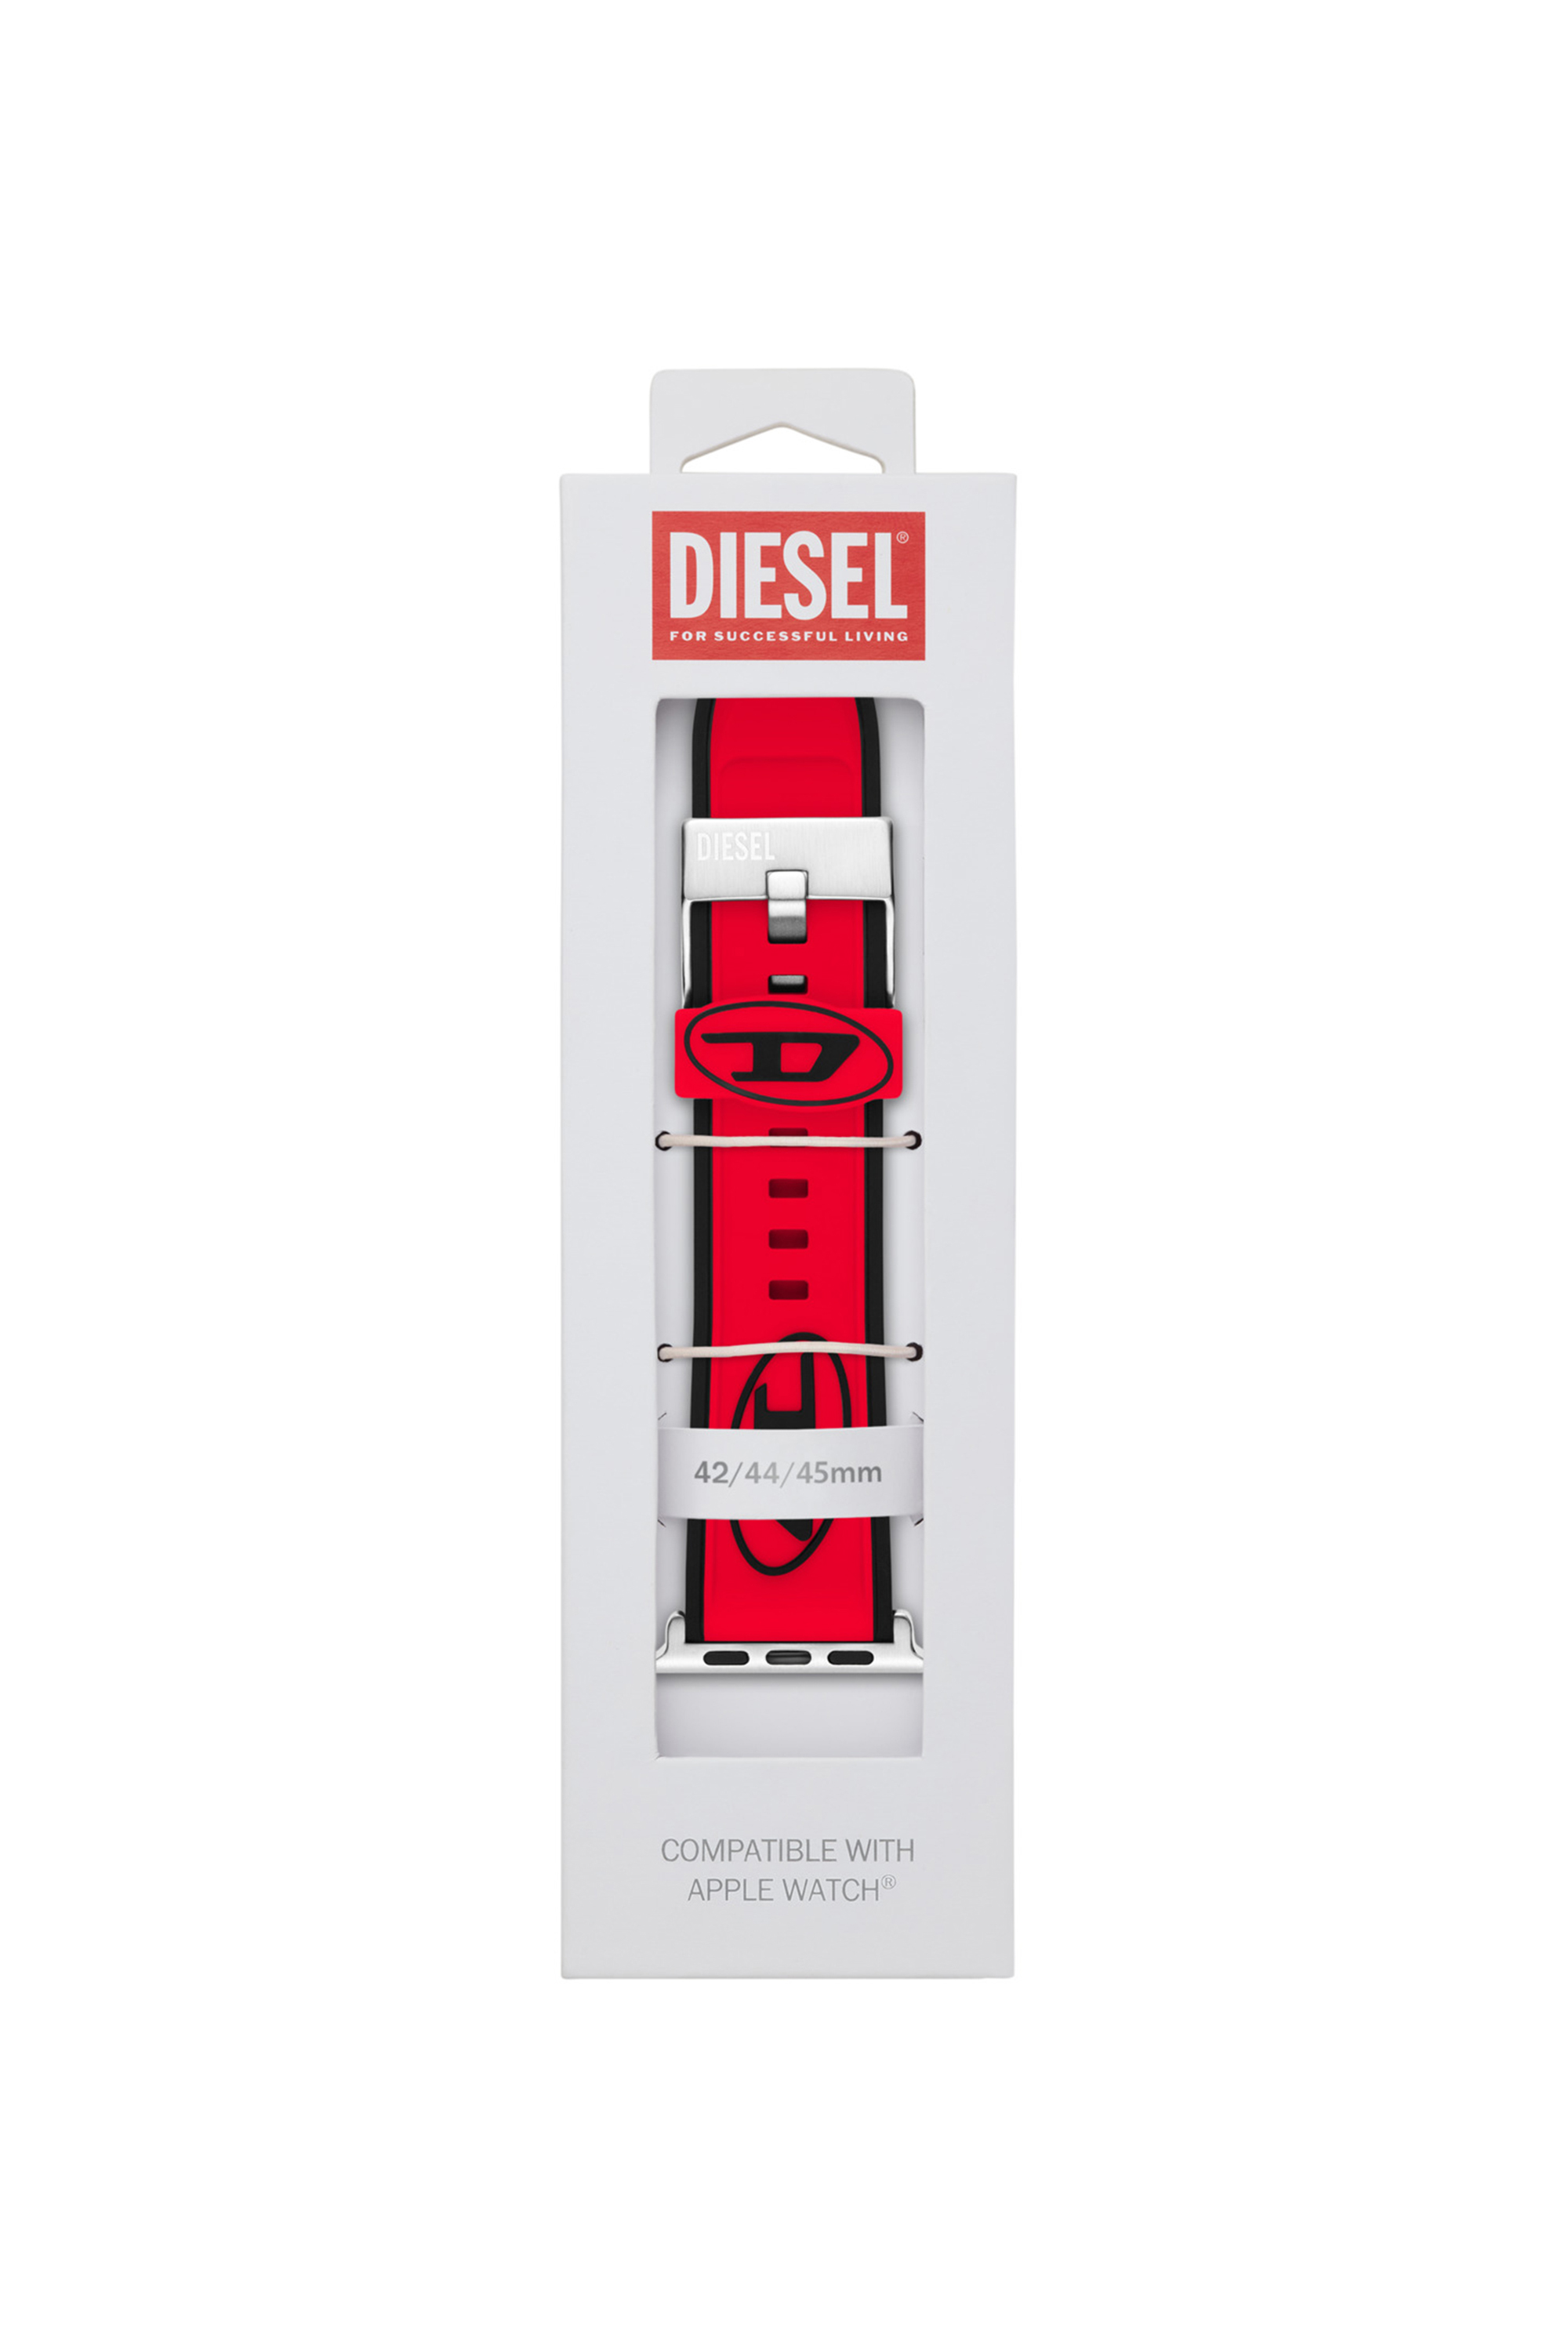 Diesel - DSS010, Rouge - Image 2